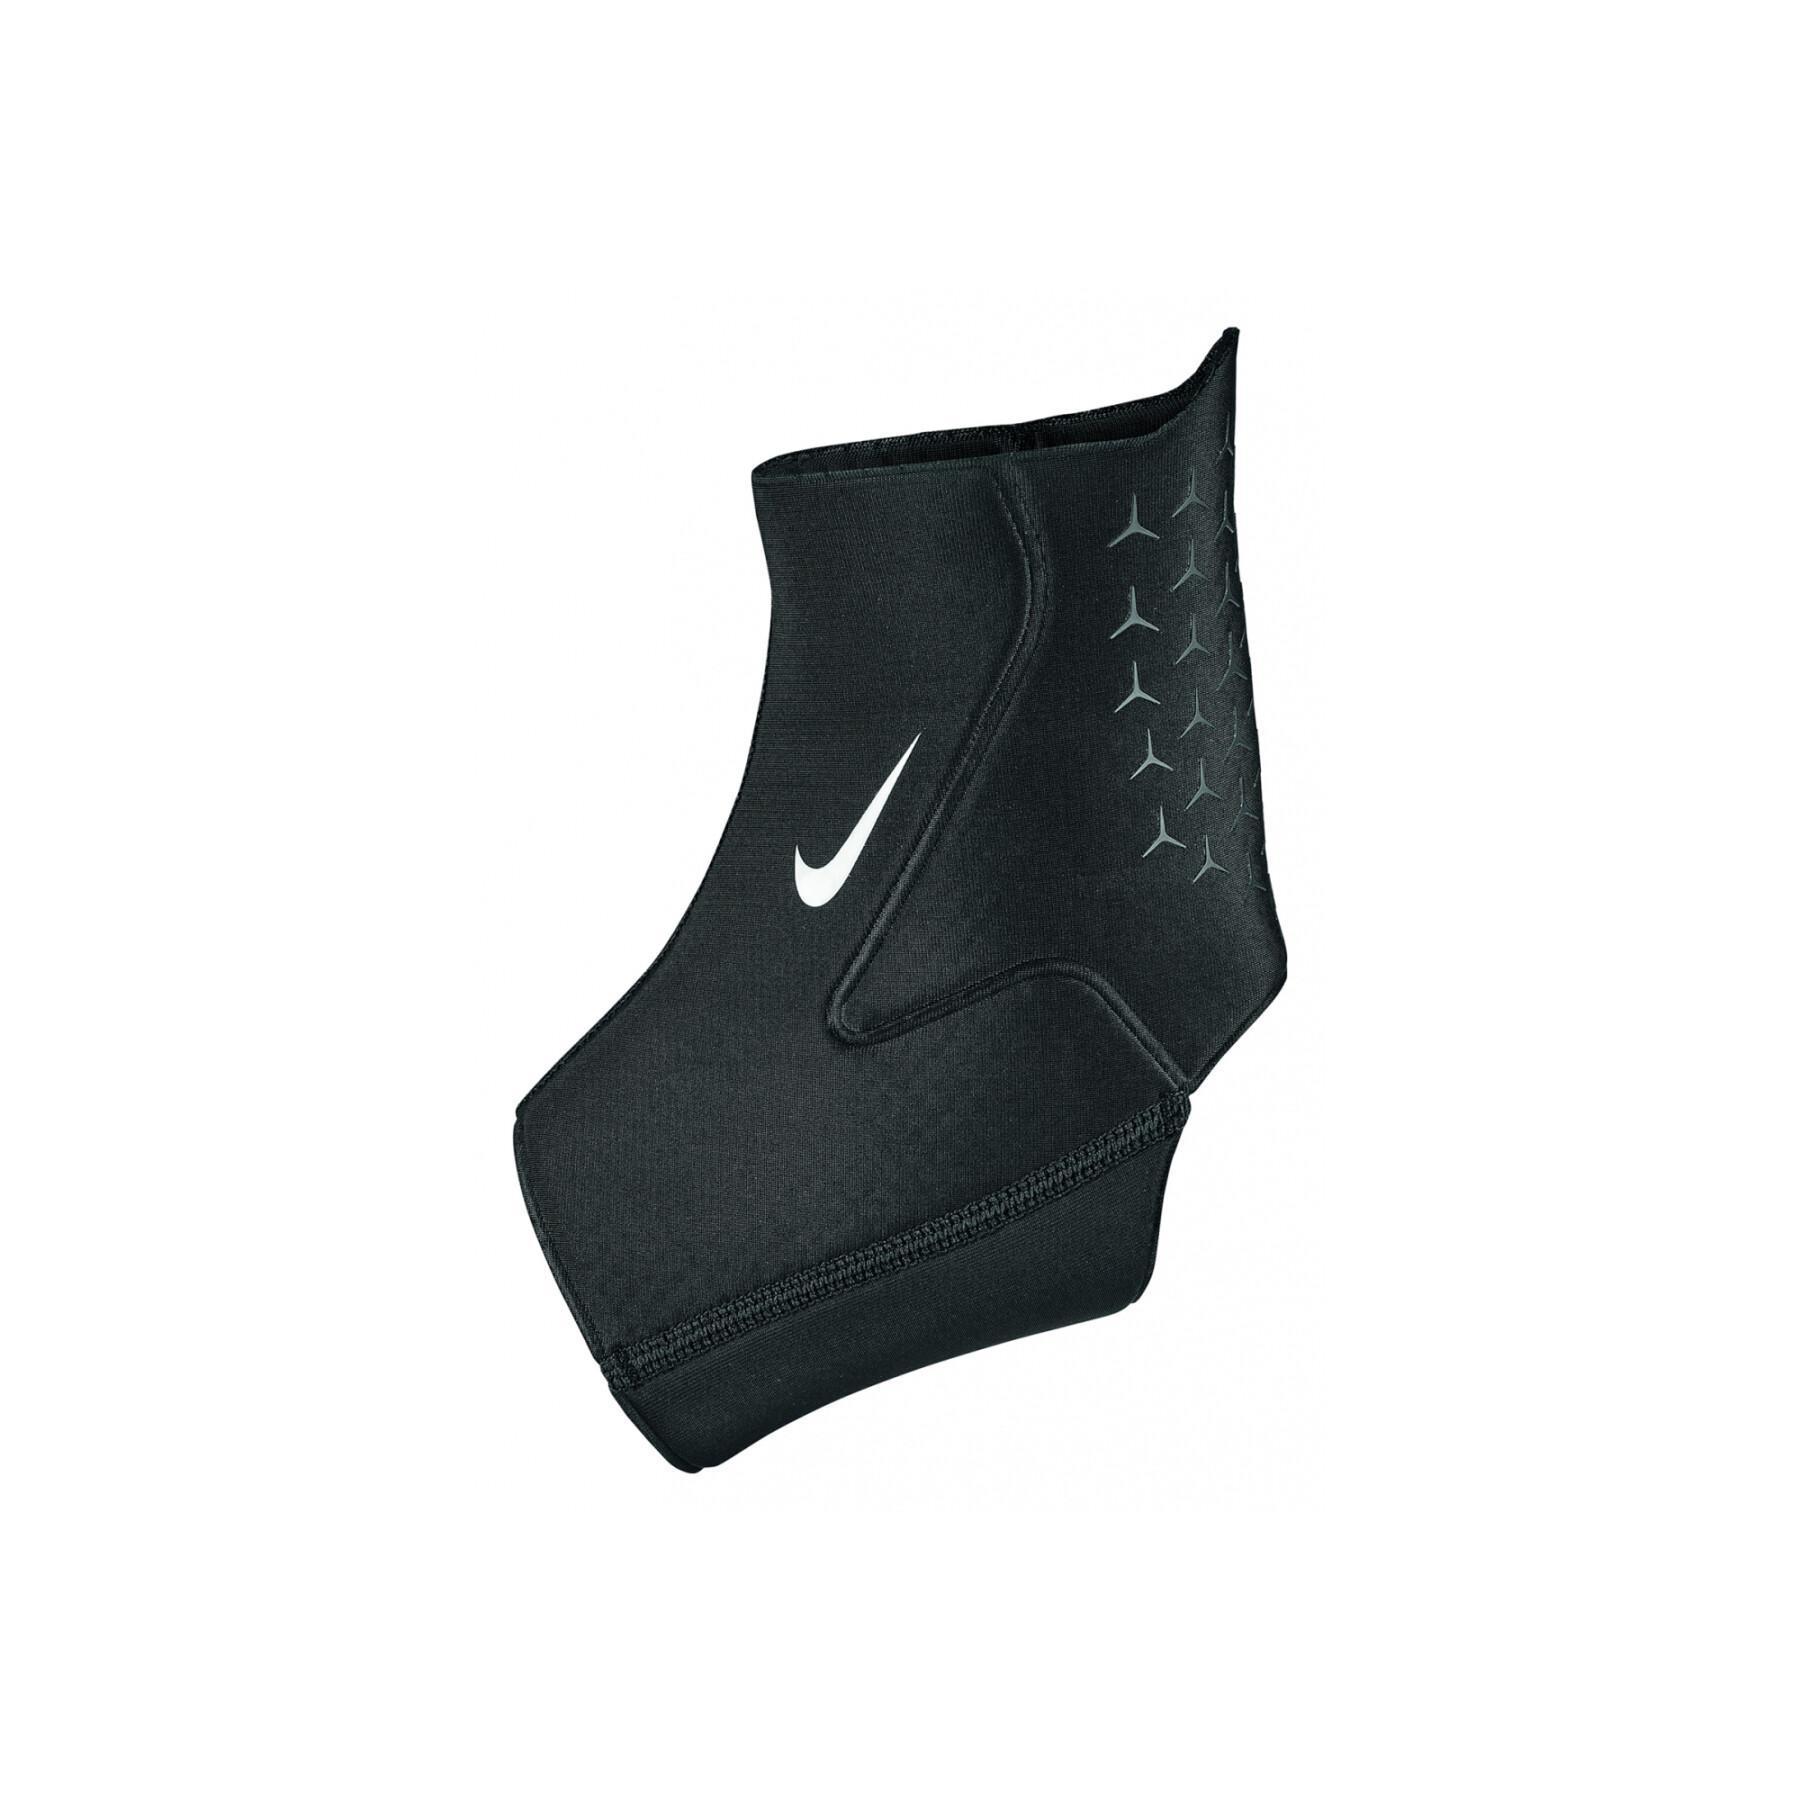 Fußgelenkstütze Nike pro 3.0